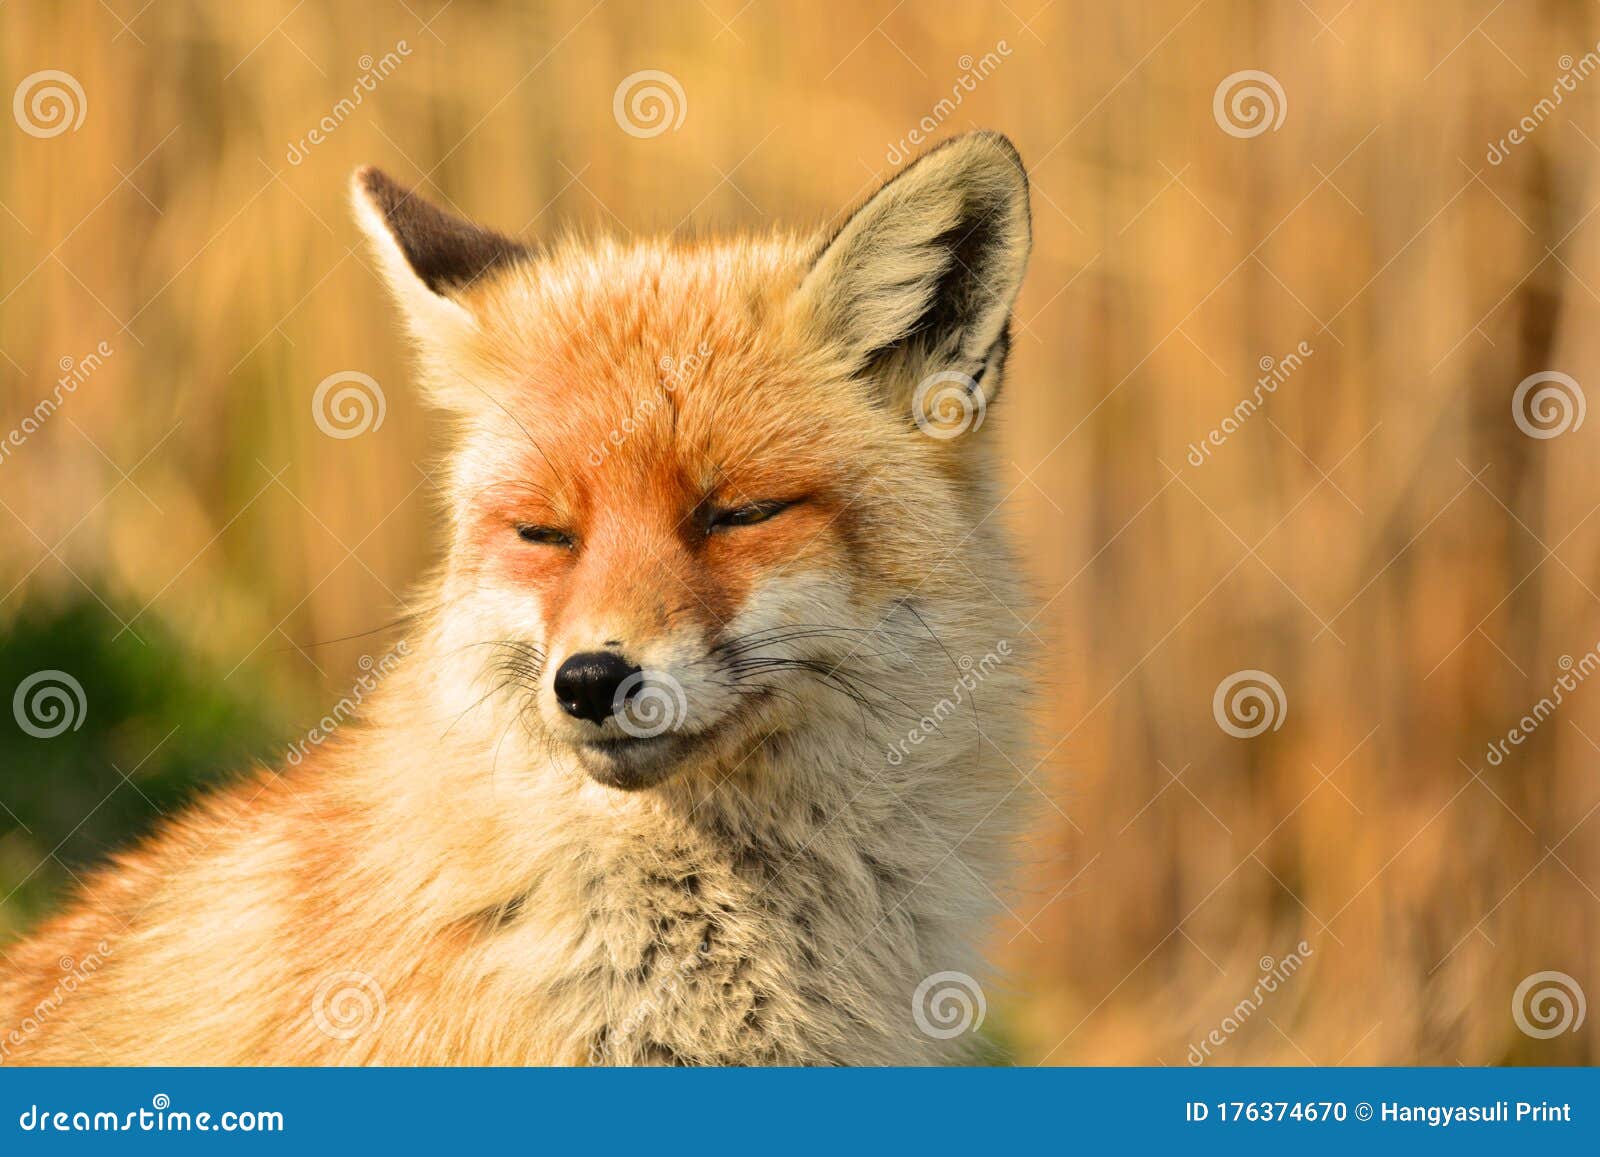 vulpes vulpes - red fox